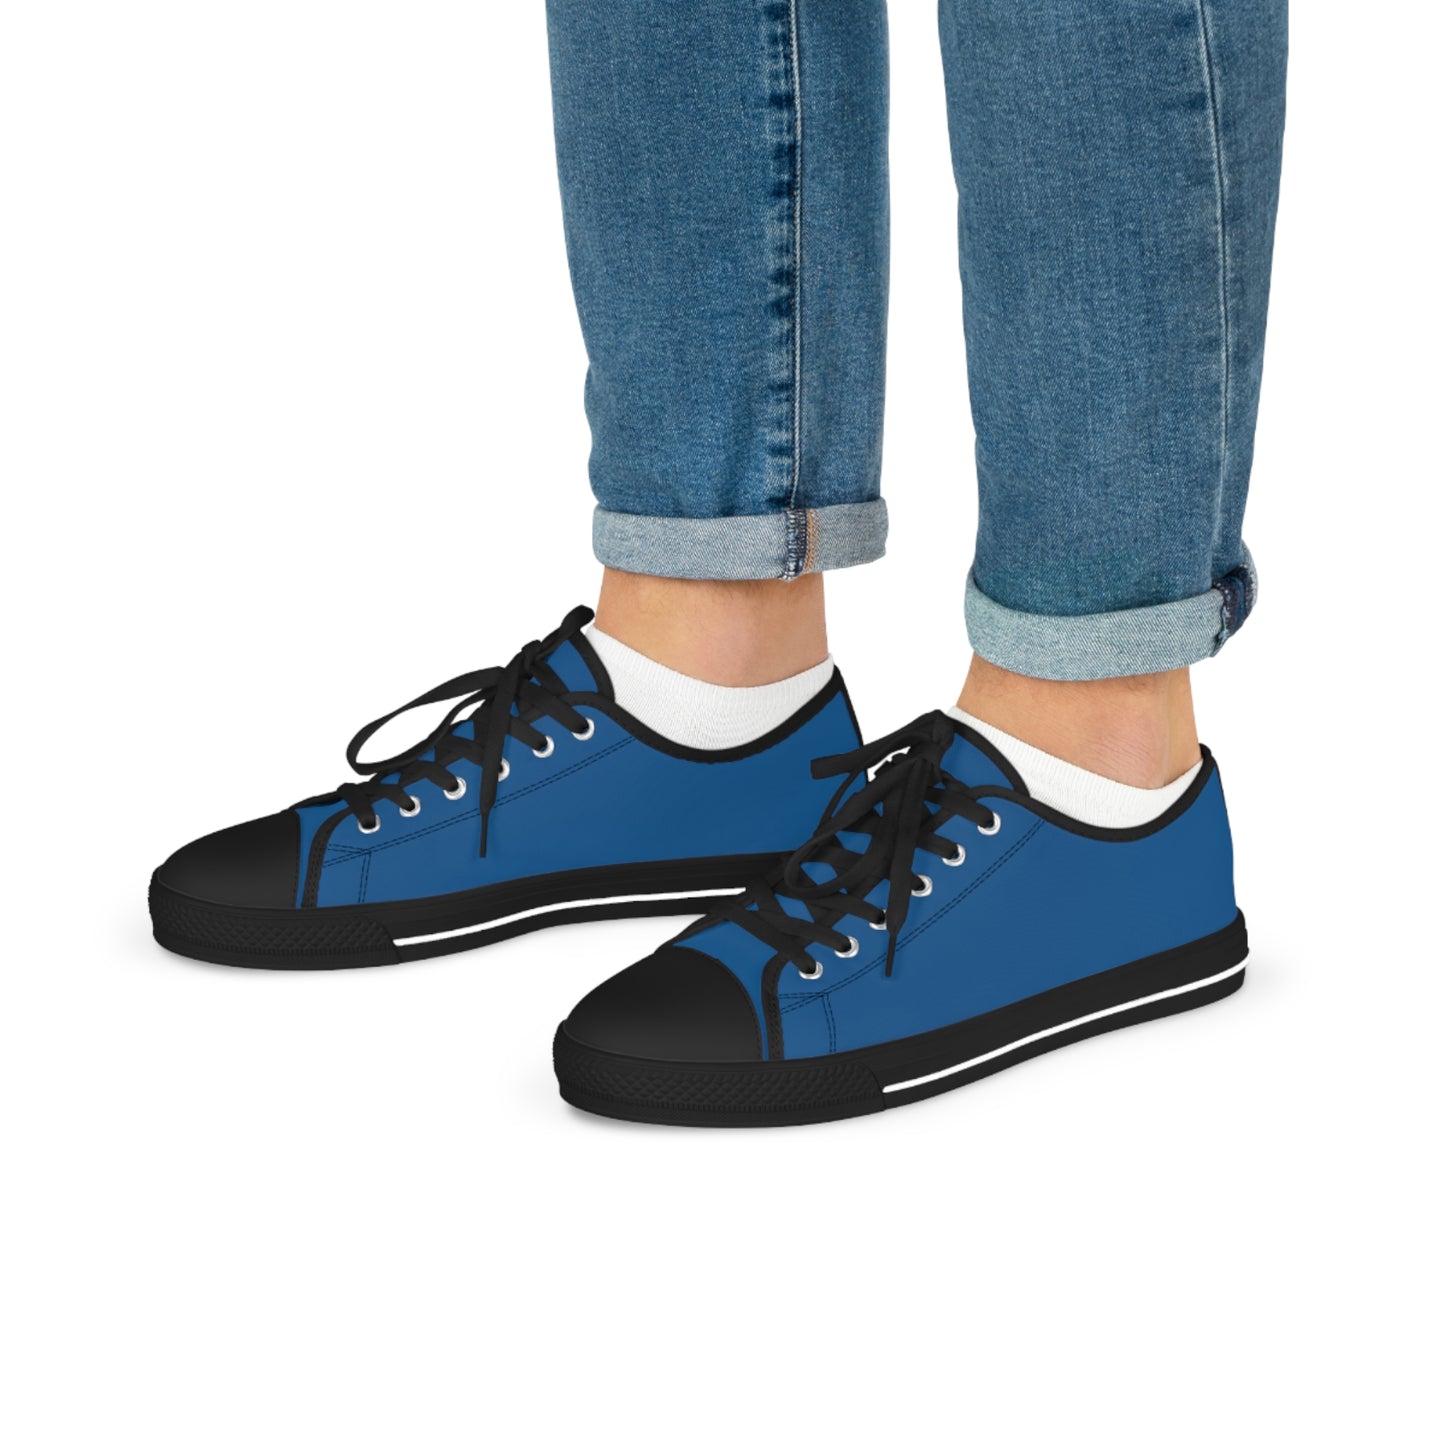 Men's Canvas Low Top Solid Color Sneakers - Rich Blue US 14 Black sole